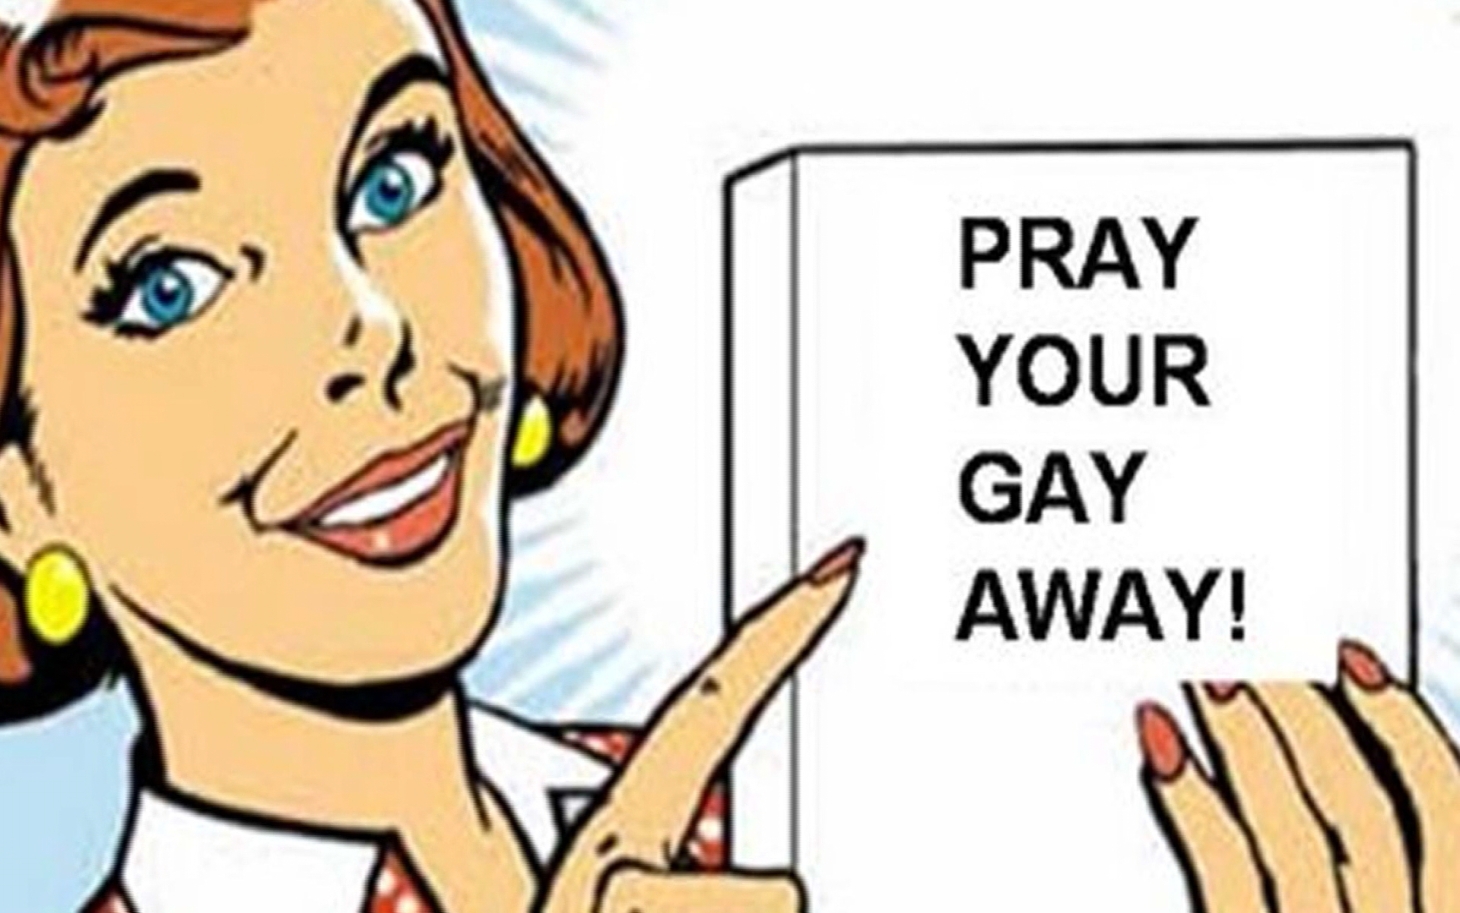 Pray your gay away